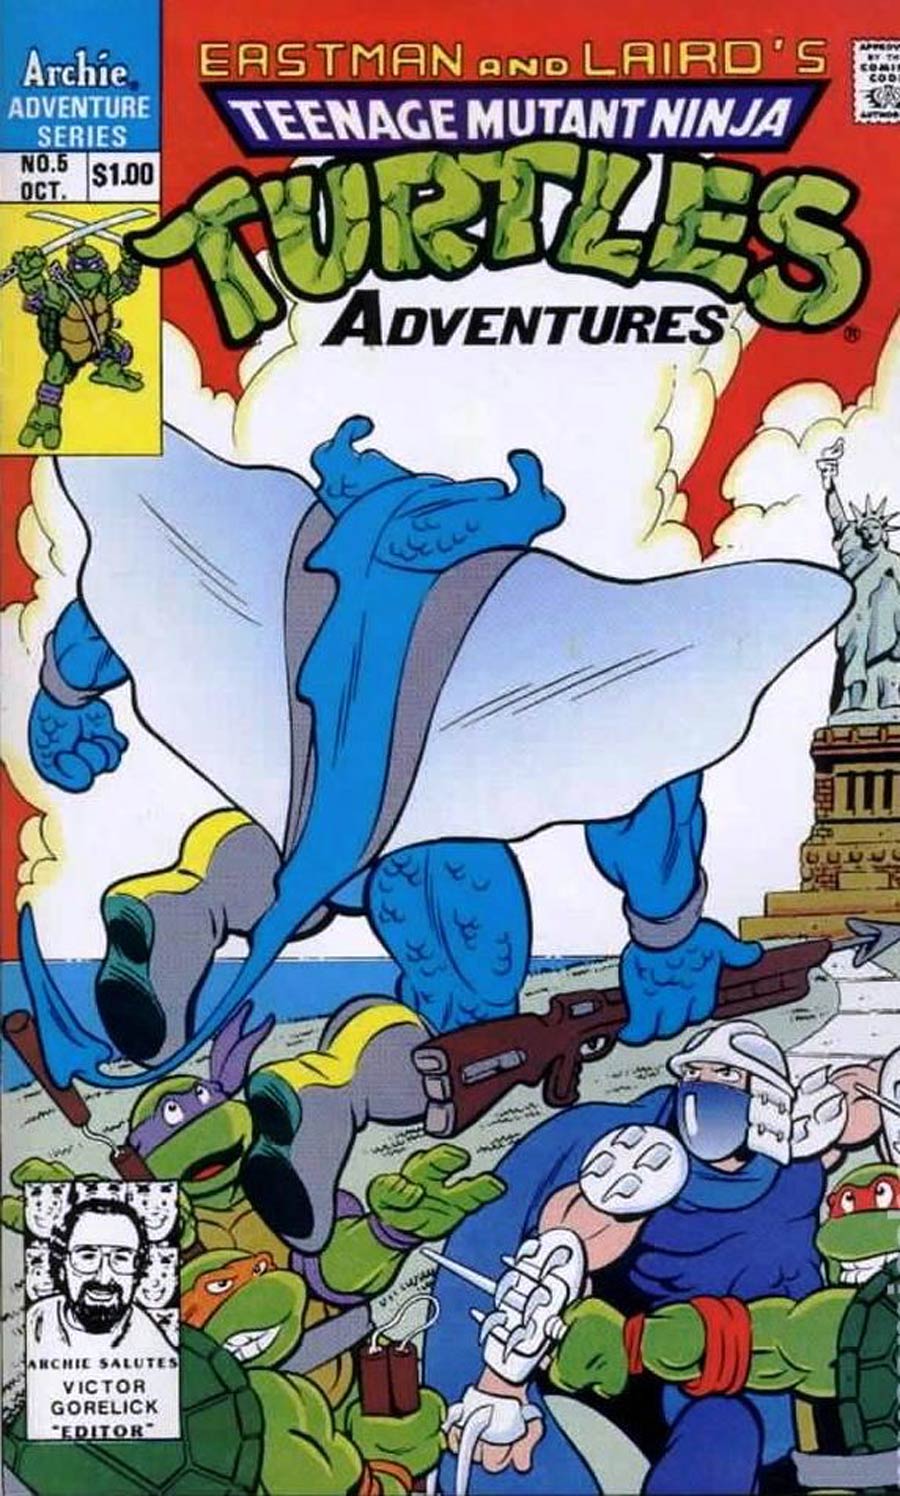 Teenage Mutant Ninja Turtles Adventures Vol 2 #5 Cover C 3rd Ptg